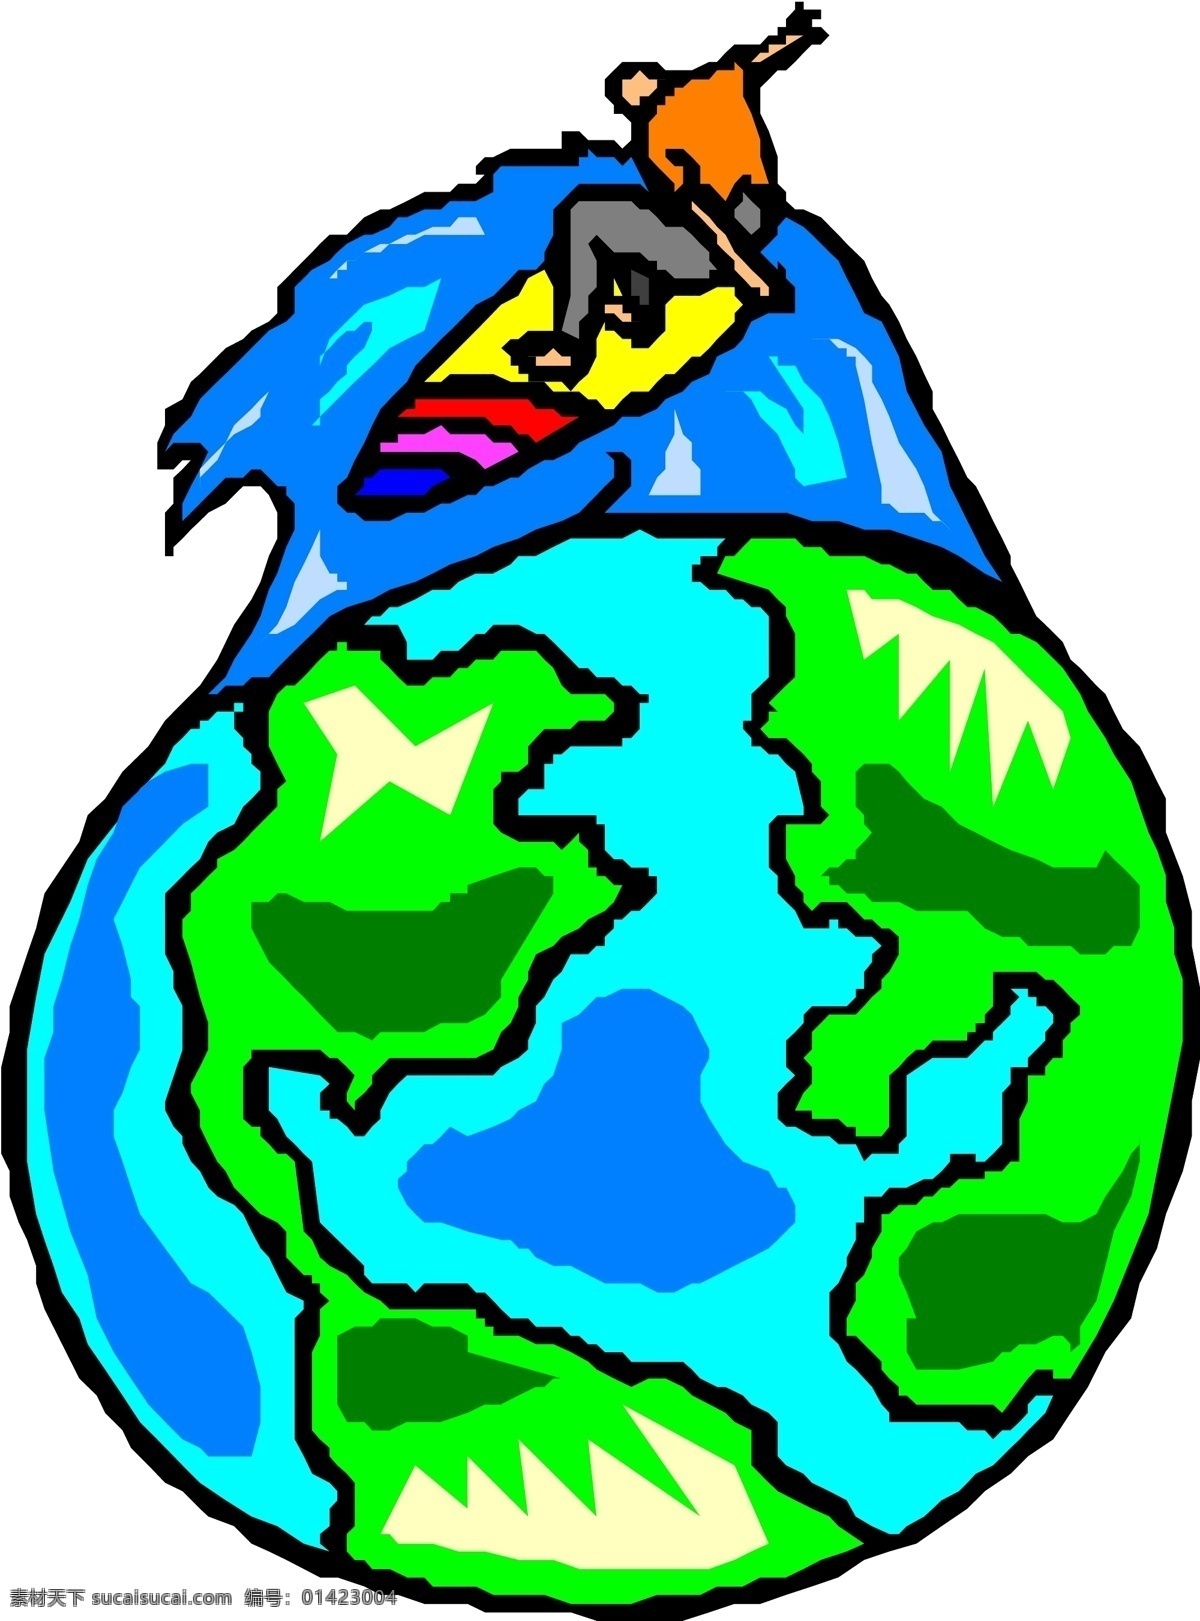 地球 太空 漫画 商业矢量 矢量风景建筑 矢量下载 地球太空漫画 网页矢量 矢量图 其他矢量图